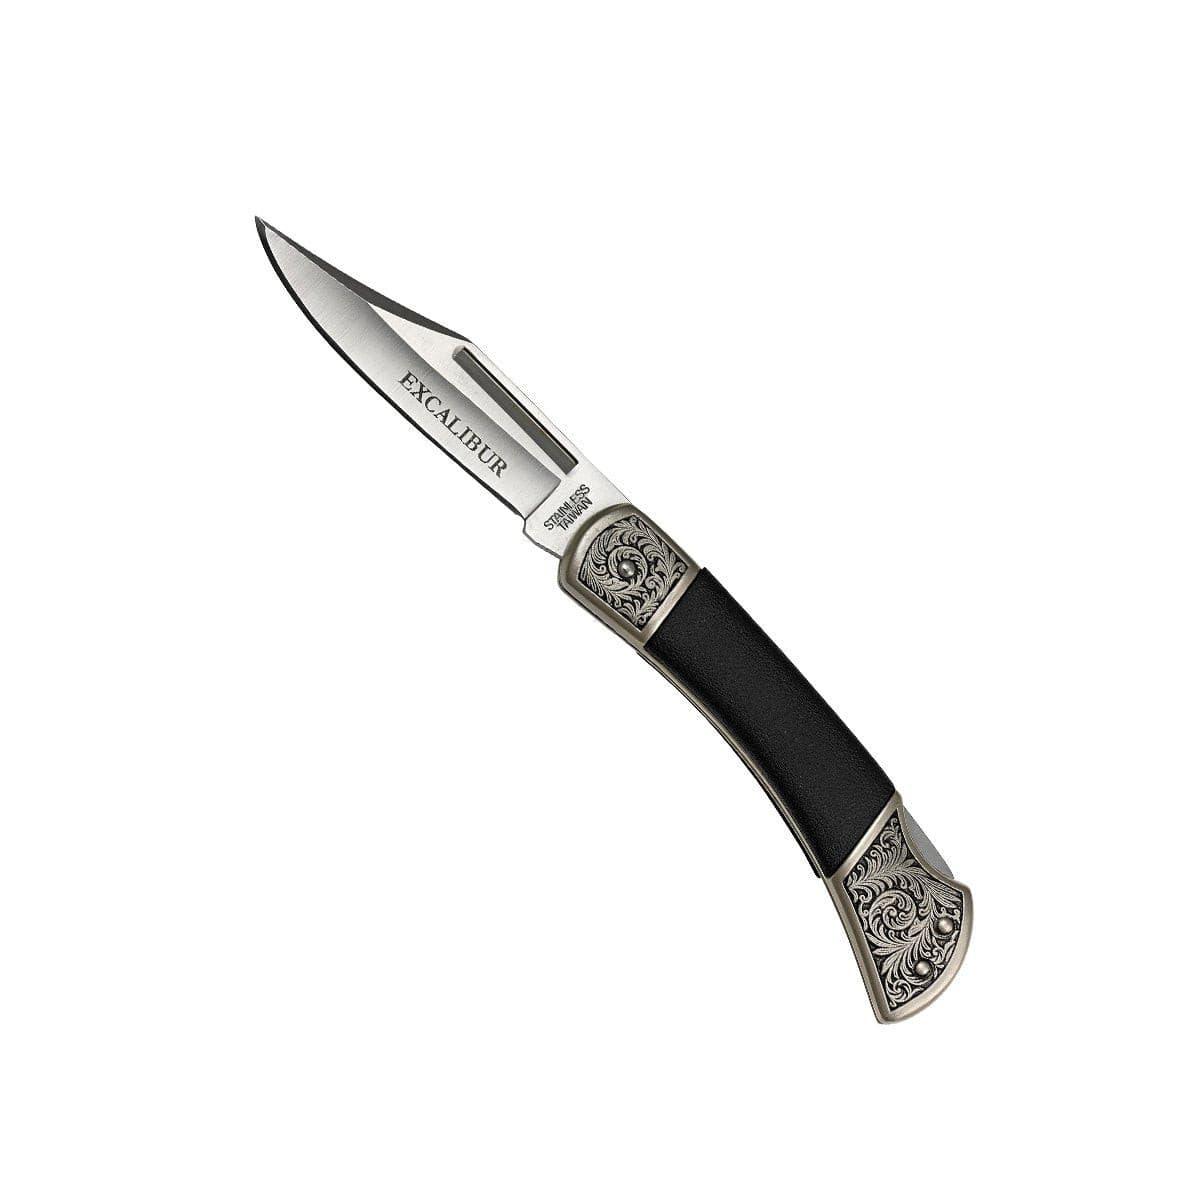 Excalibur Royal Black Prince - 105mm Folding Pocket Knife - Knife Store